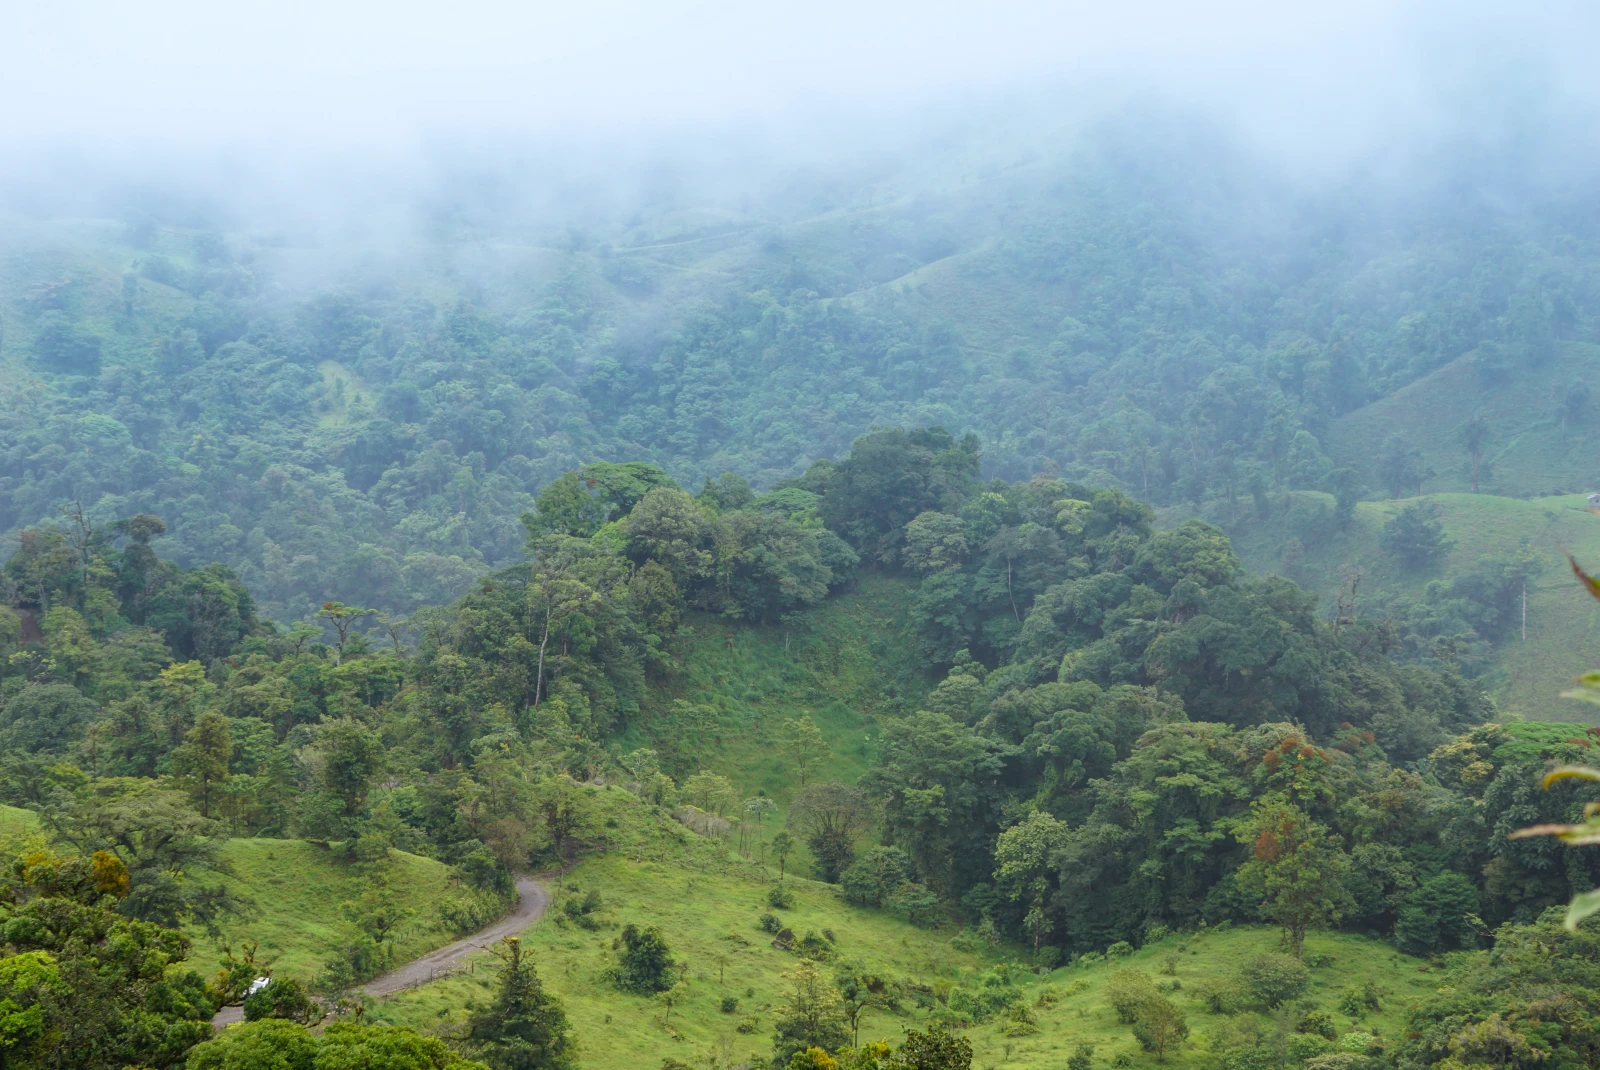 Cloud forest in Costa Rica.